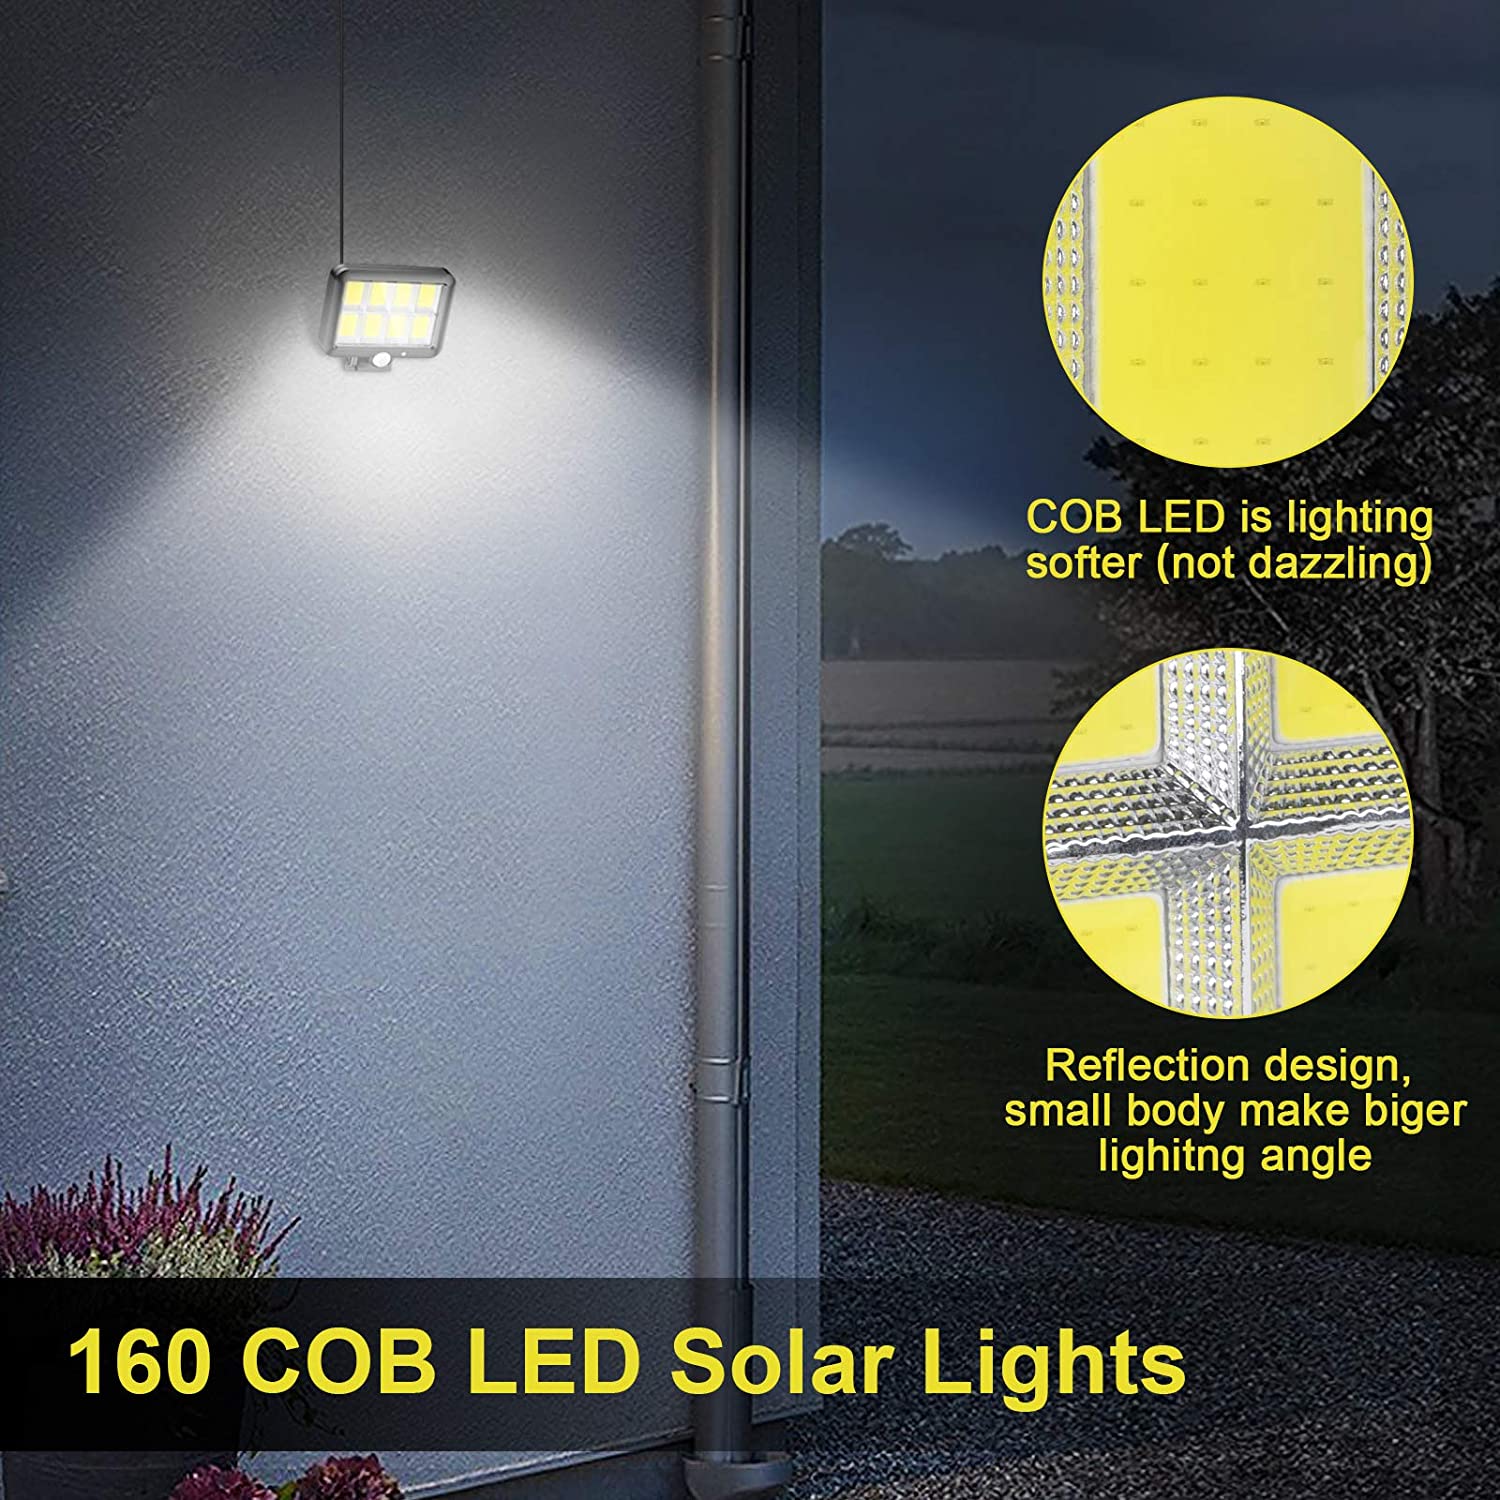 LED-Flood-Street-Lights-Solar-Lights-Outdoor-Motion-Sensor-Security-Led-Flood-Light-160-Bright-COB-LED-Adjustable-Solar-Panel-3-Lighting-Modes-for-Yard-Garden-Garage-21